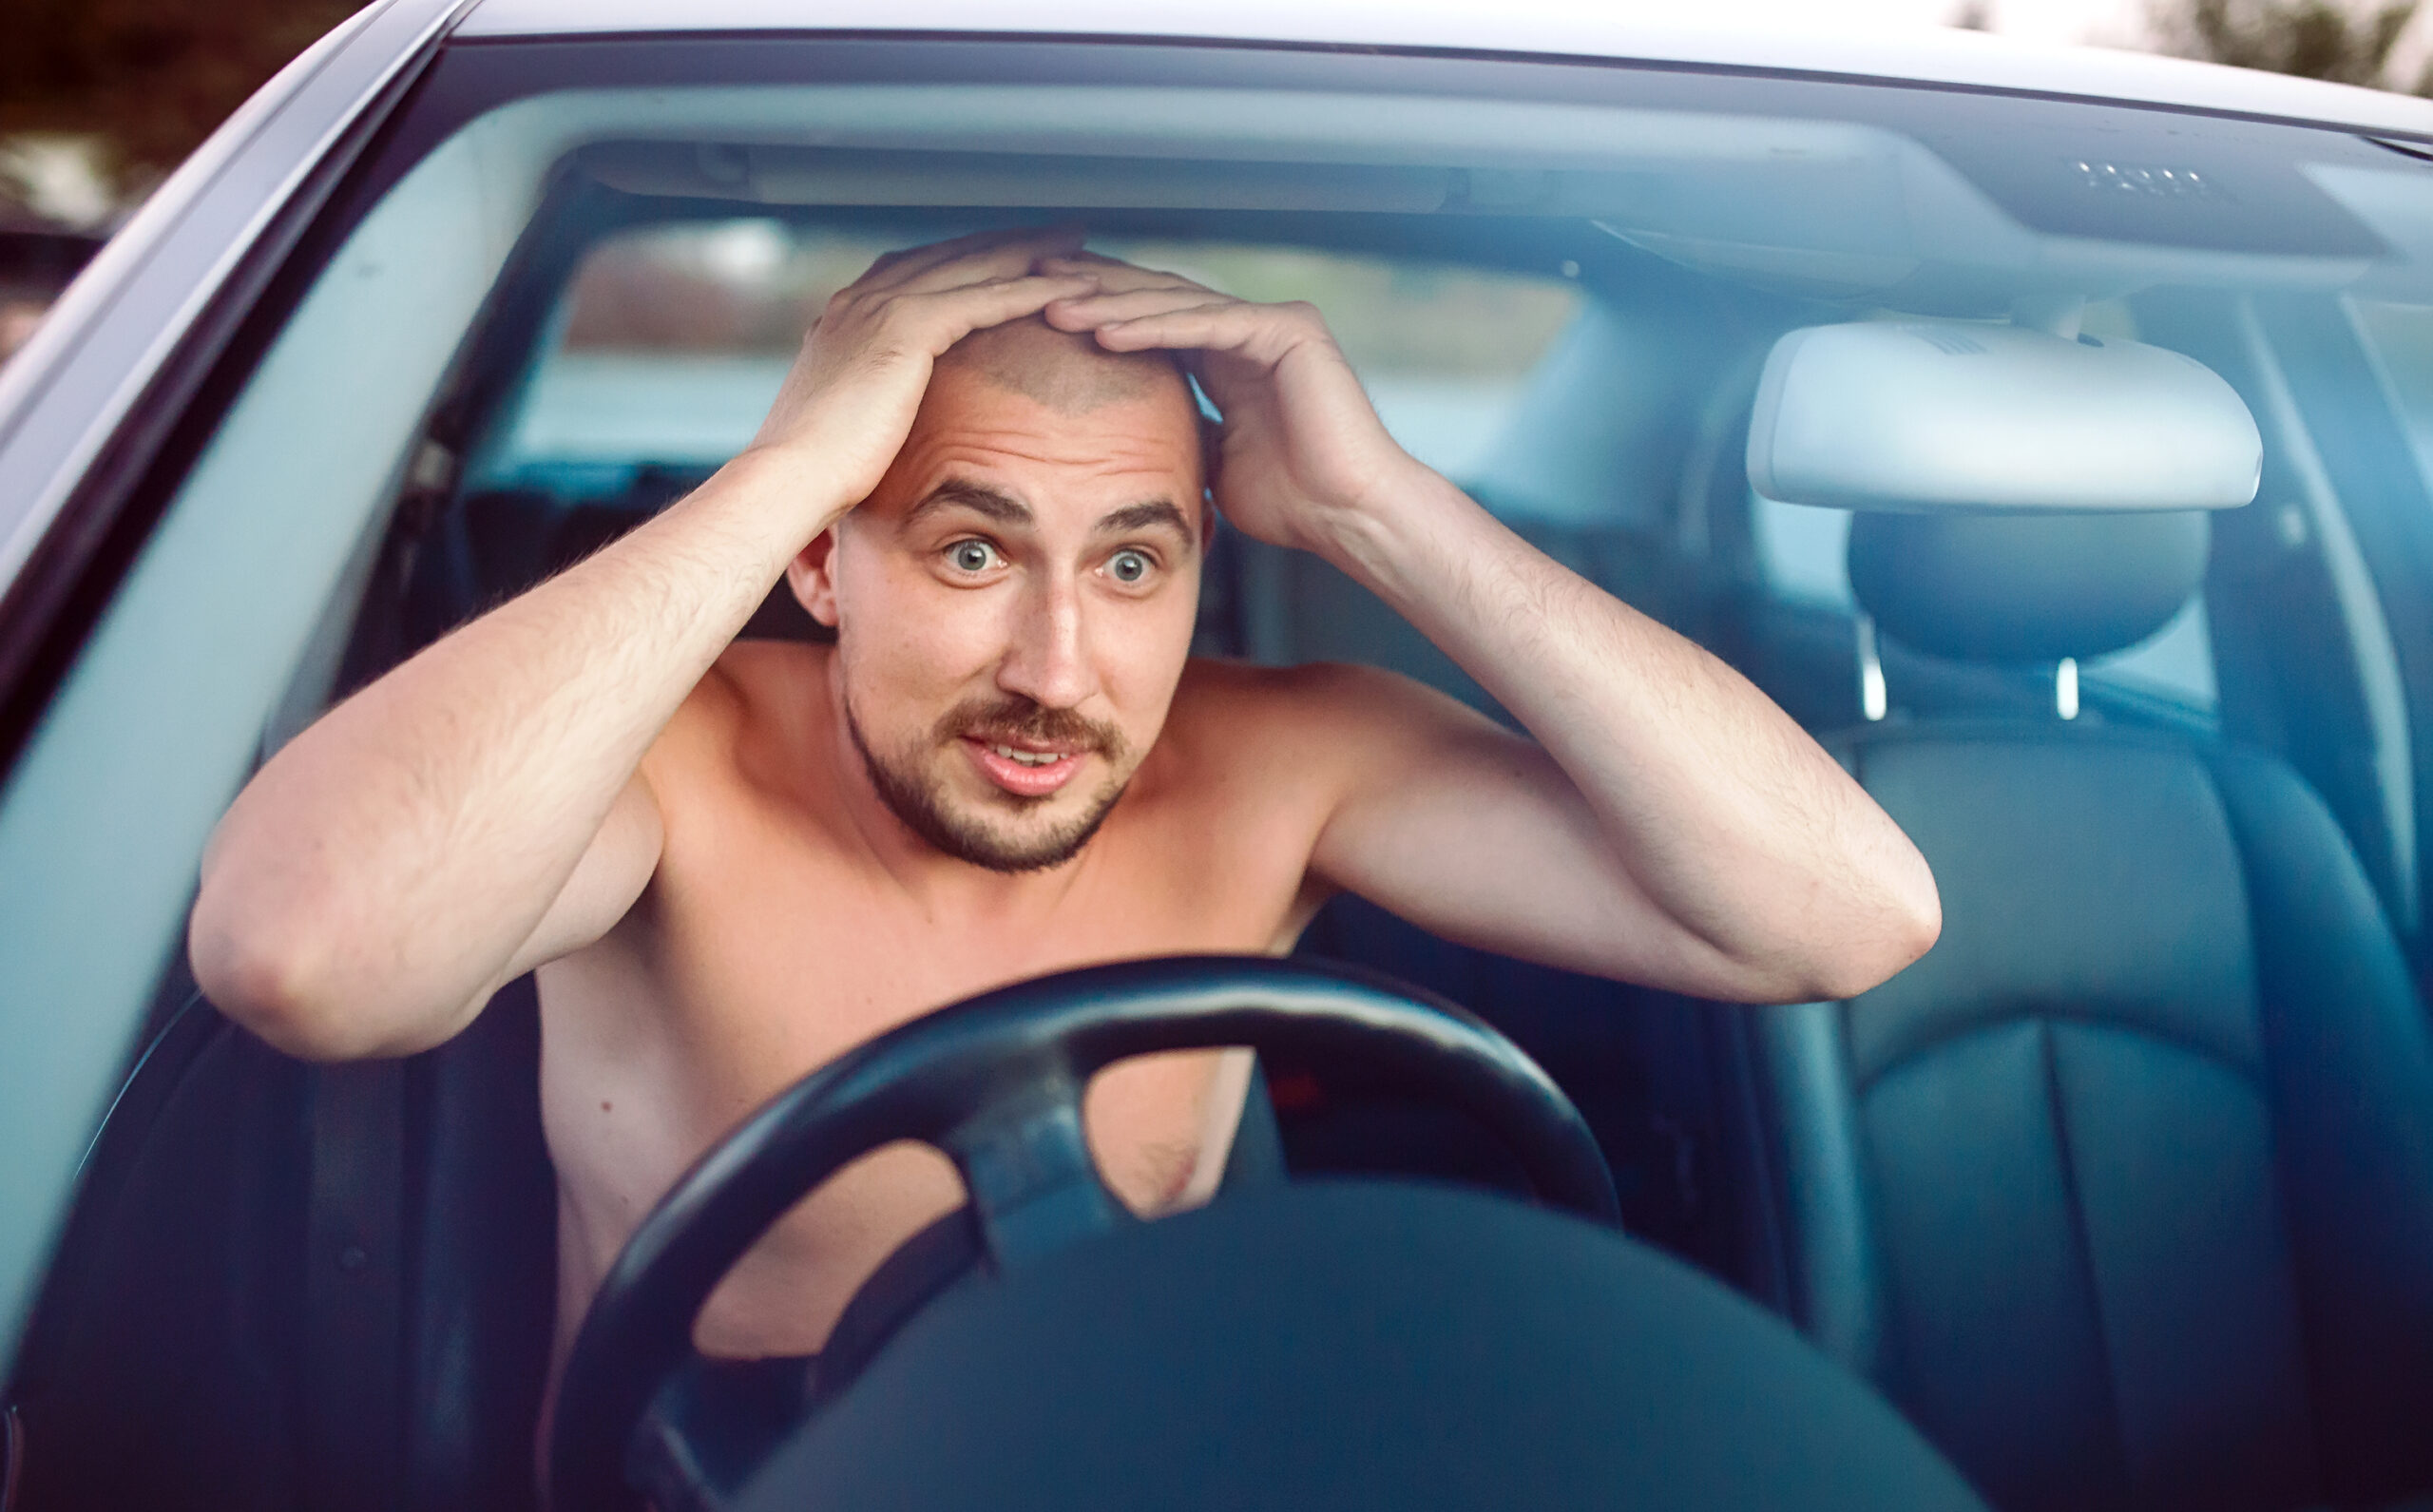 Dirigir sem camisa: lei de trânsito prevê multa ou é permitido?